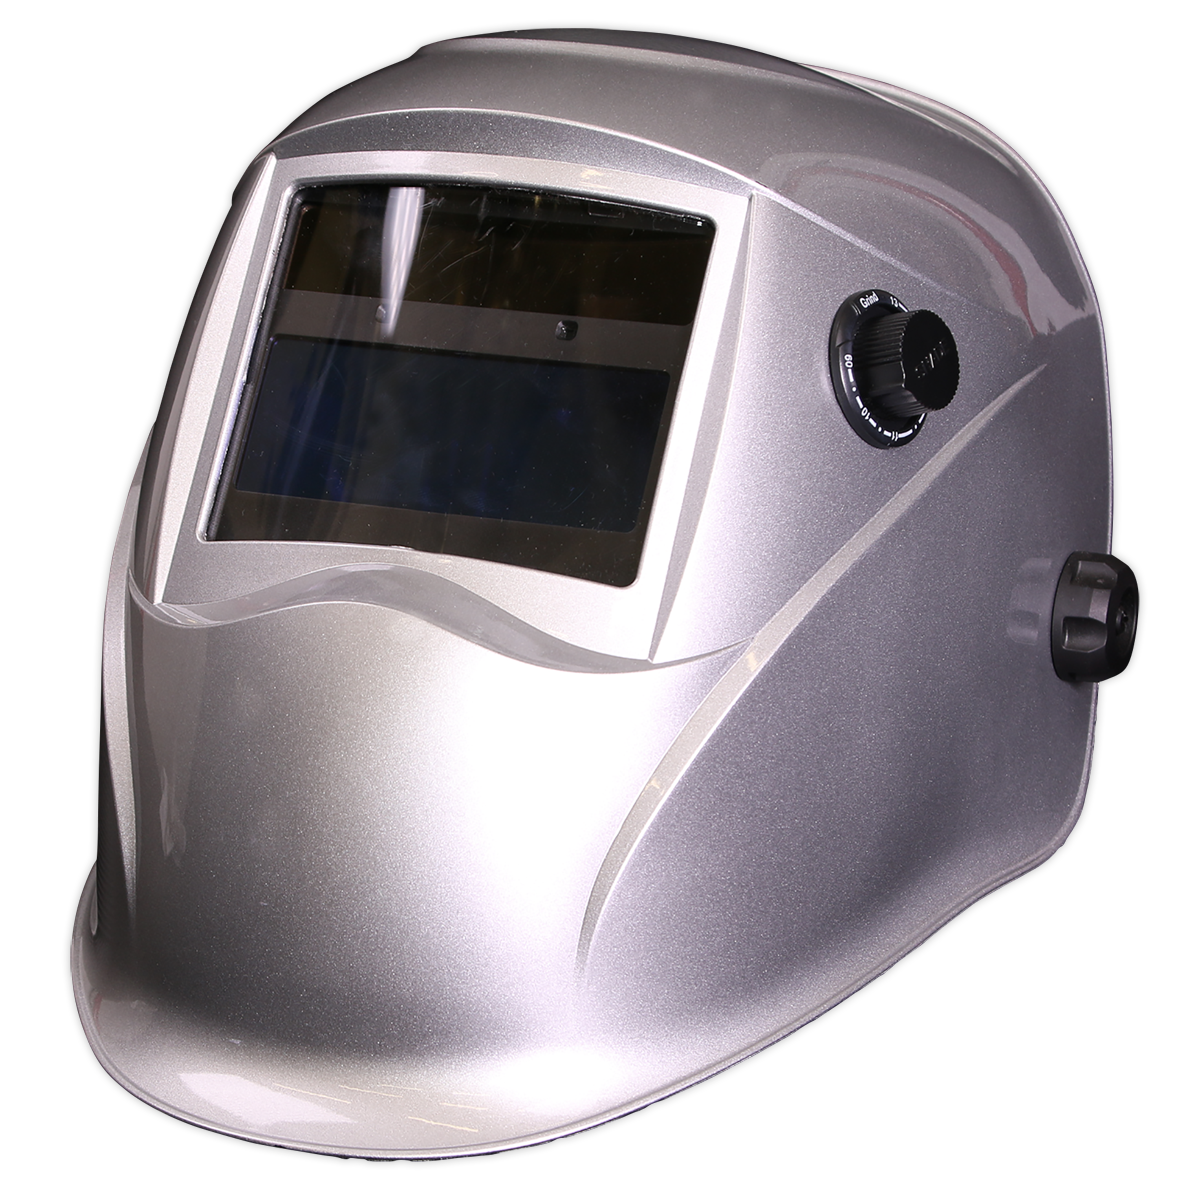 Sealey Welding Helmet Auto Darkening - Shade 9-13 - Silver